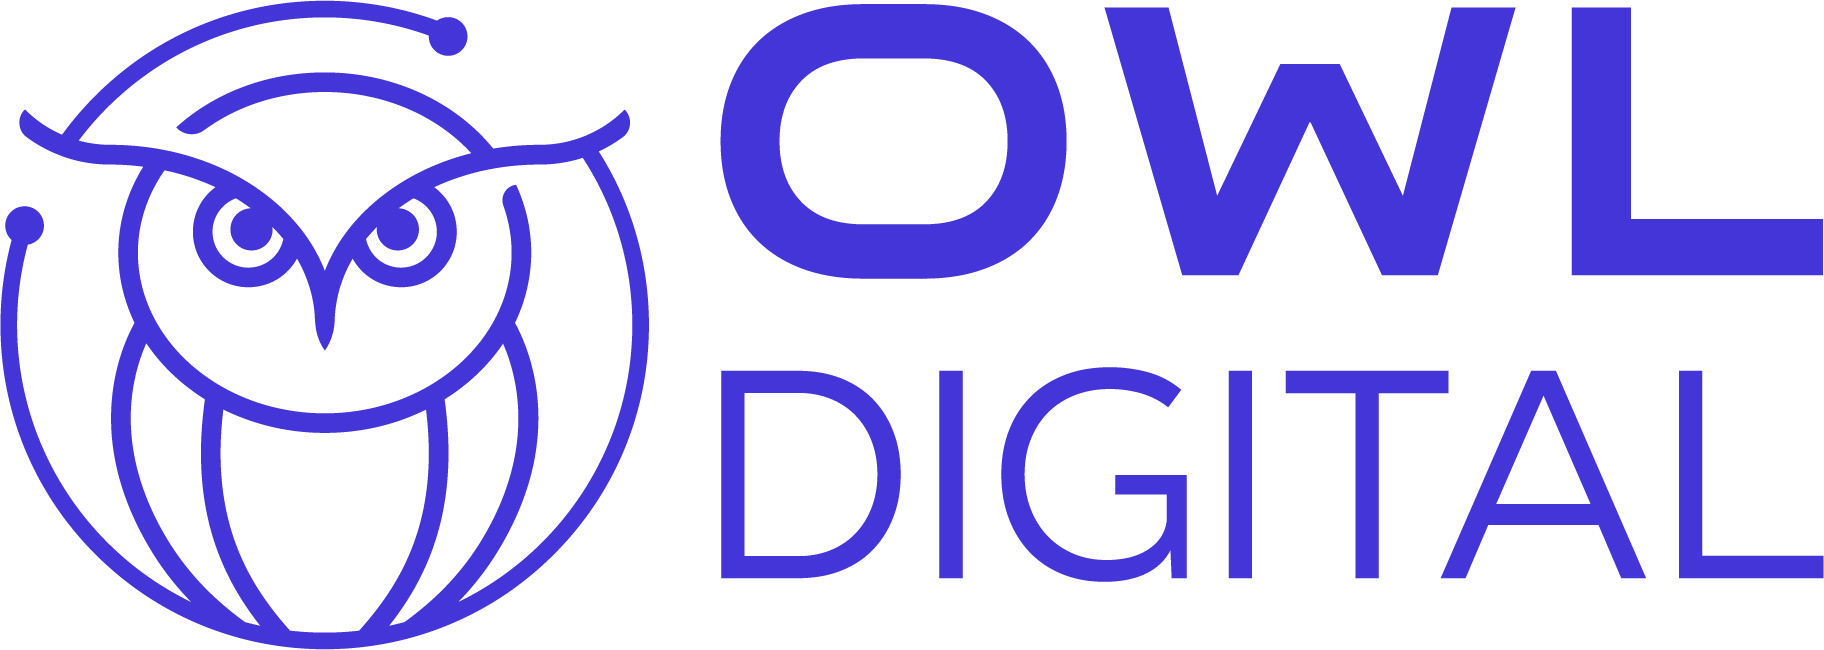 owl digital